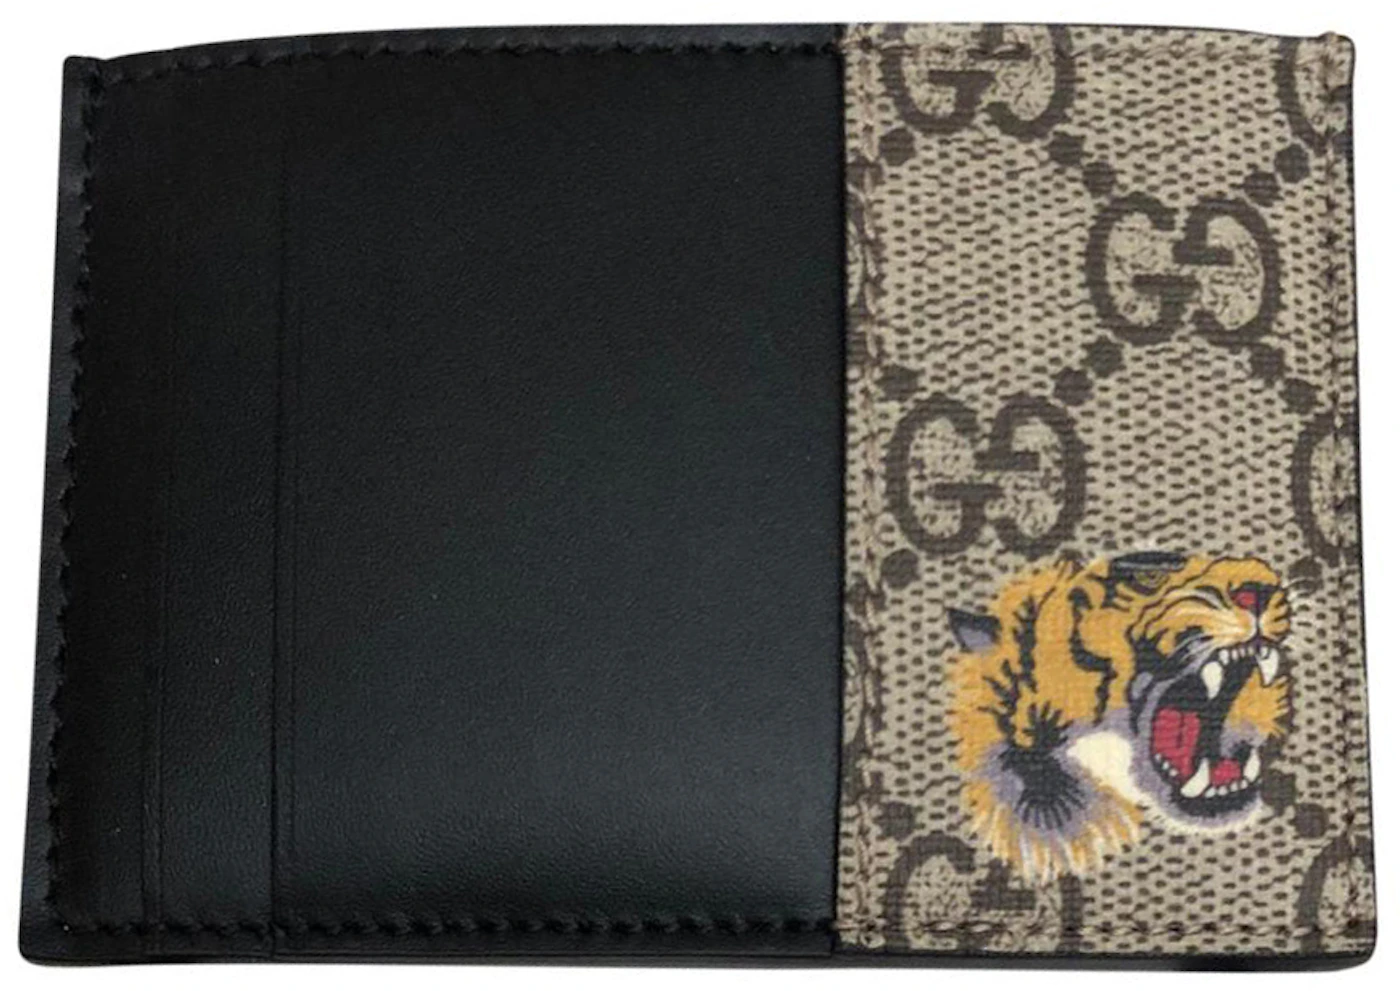 Brown Tiger Head Wallet